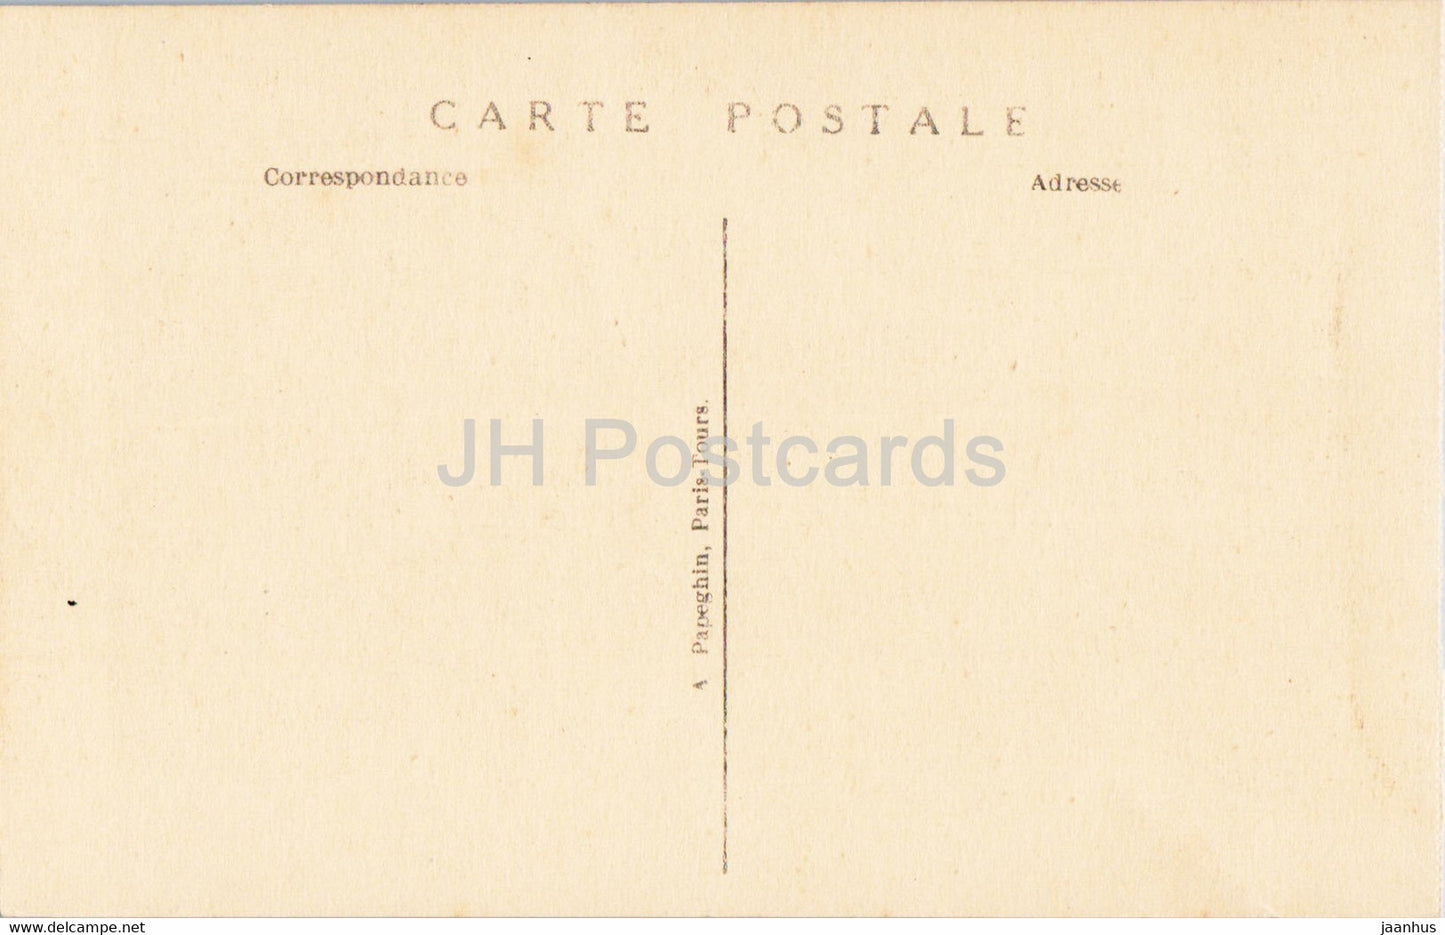 Versailles - La Voiture du Sacre de Charles X - 144 - Pferdekutsche - alte Postkarte - Frankreich - unbenutzt